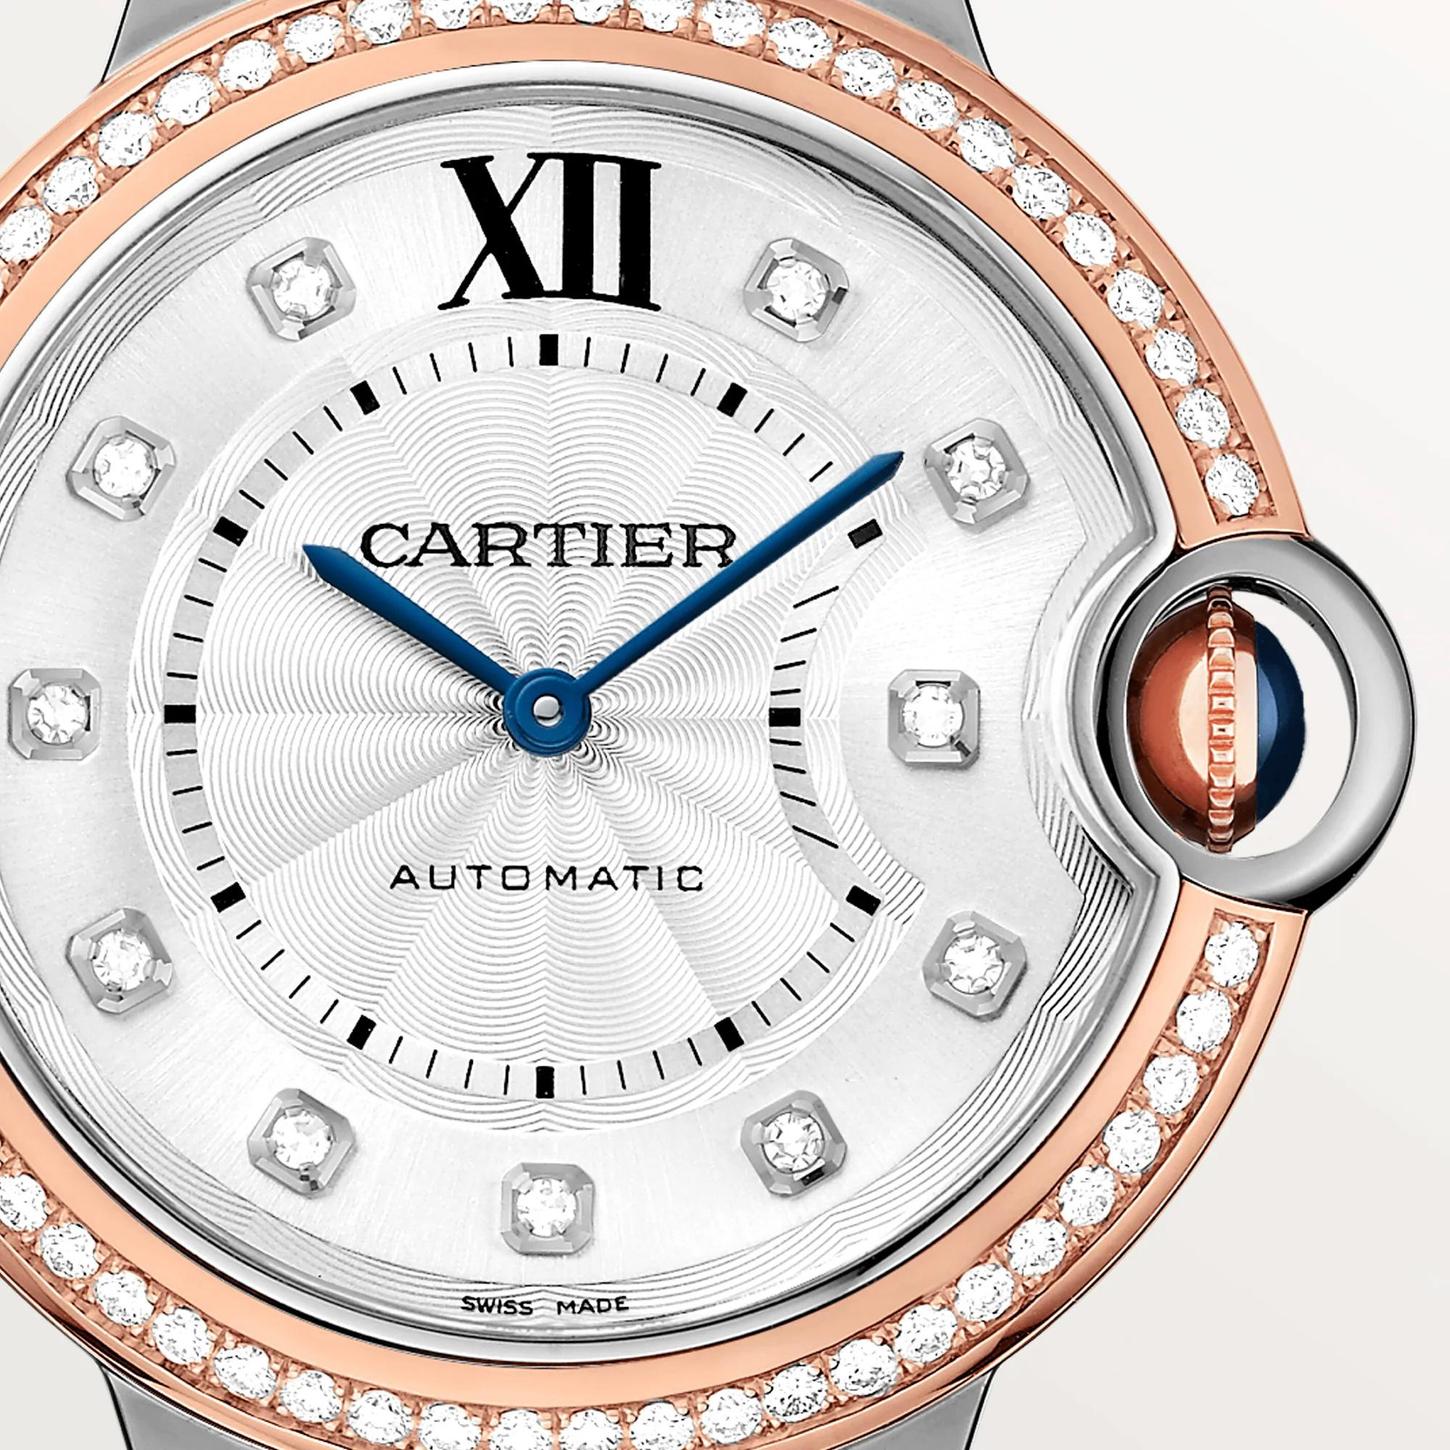 Ballon Bleu de Cartier Watch in Rose Gold with Diamonds, 36mm 0